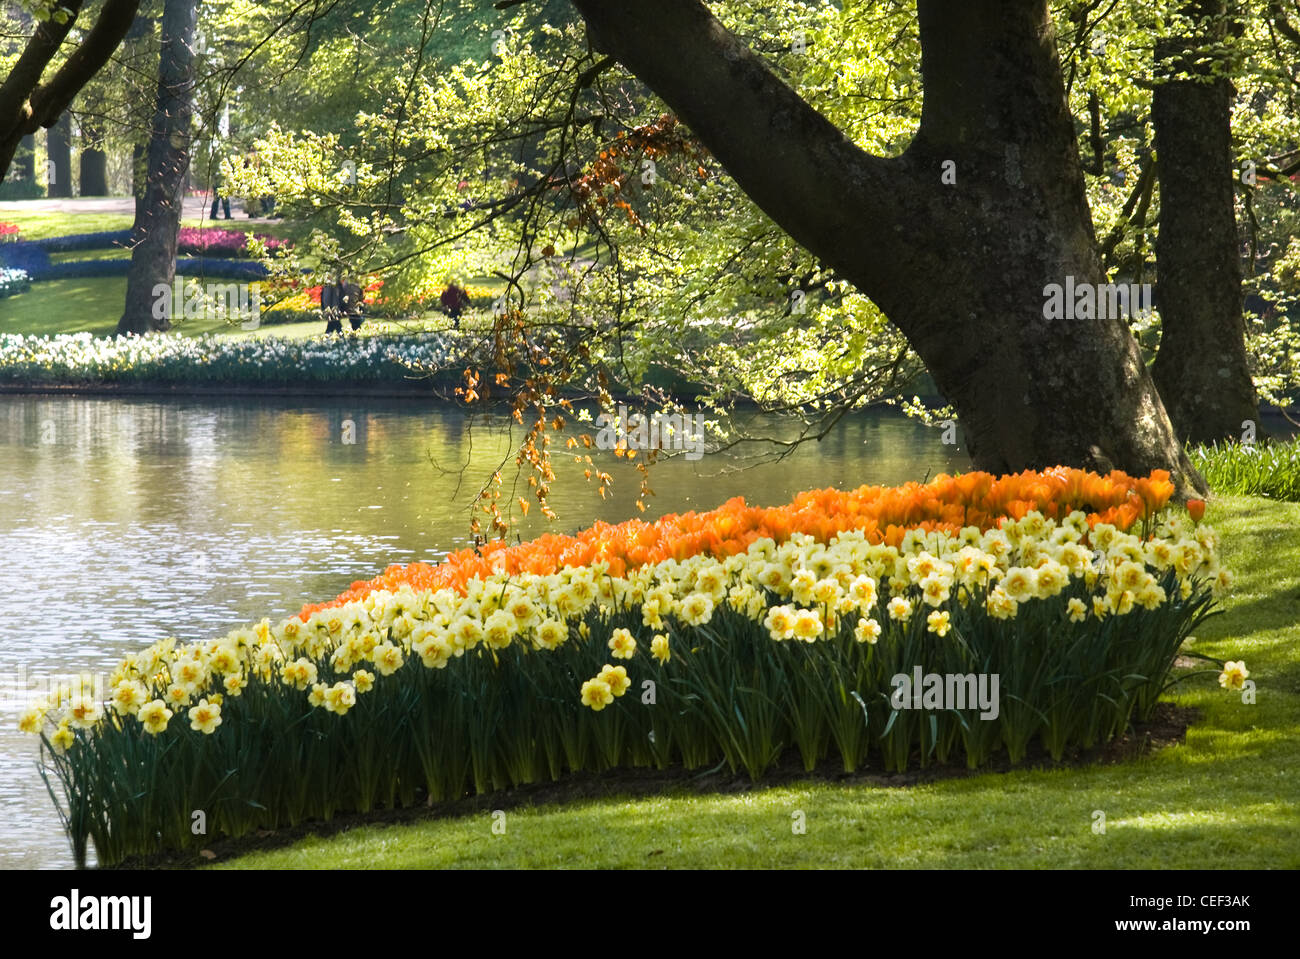 Teich im Park mit Anordnung der Tulpen und Narzissen Blumen herum im Frühjahr Stockfoto